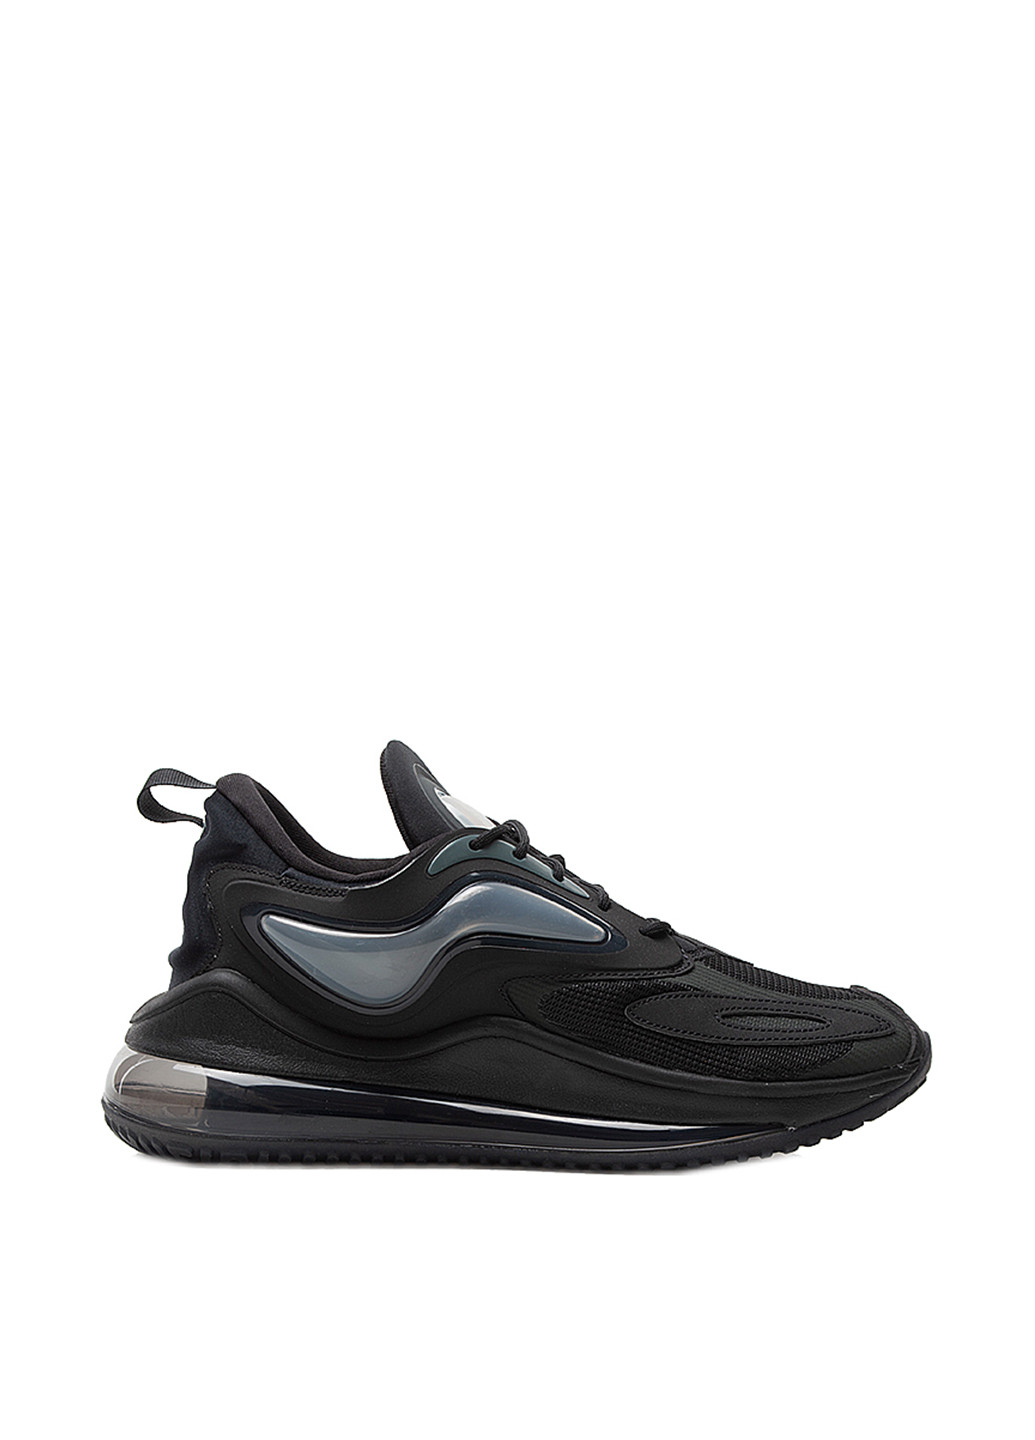 Черные демисезонные кроссовки Nike Nike Air Max Zephyr